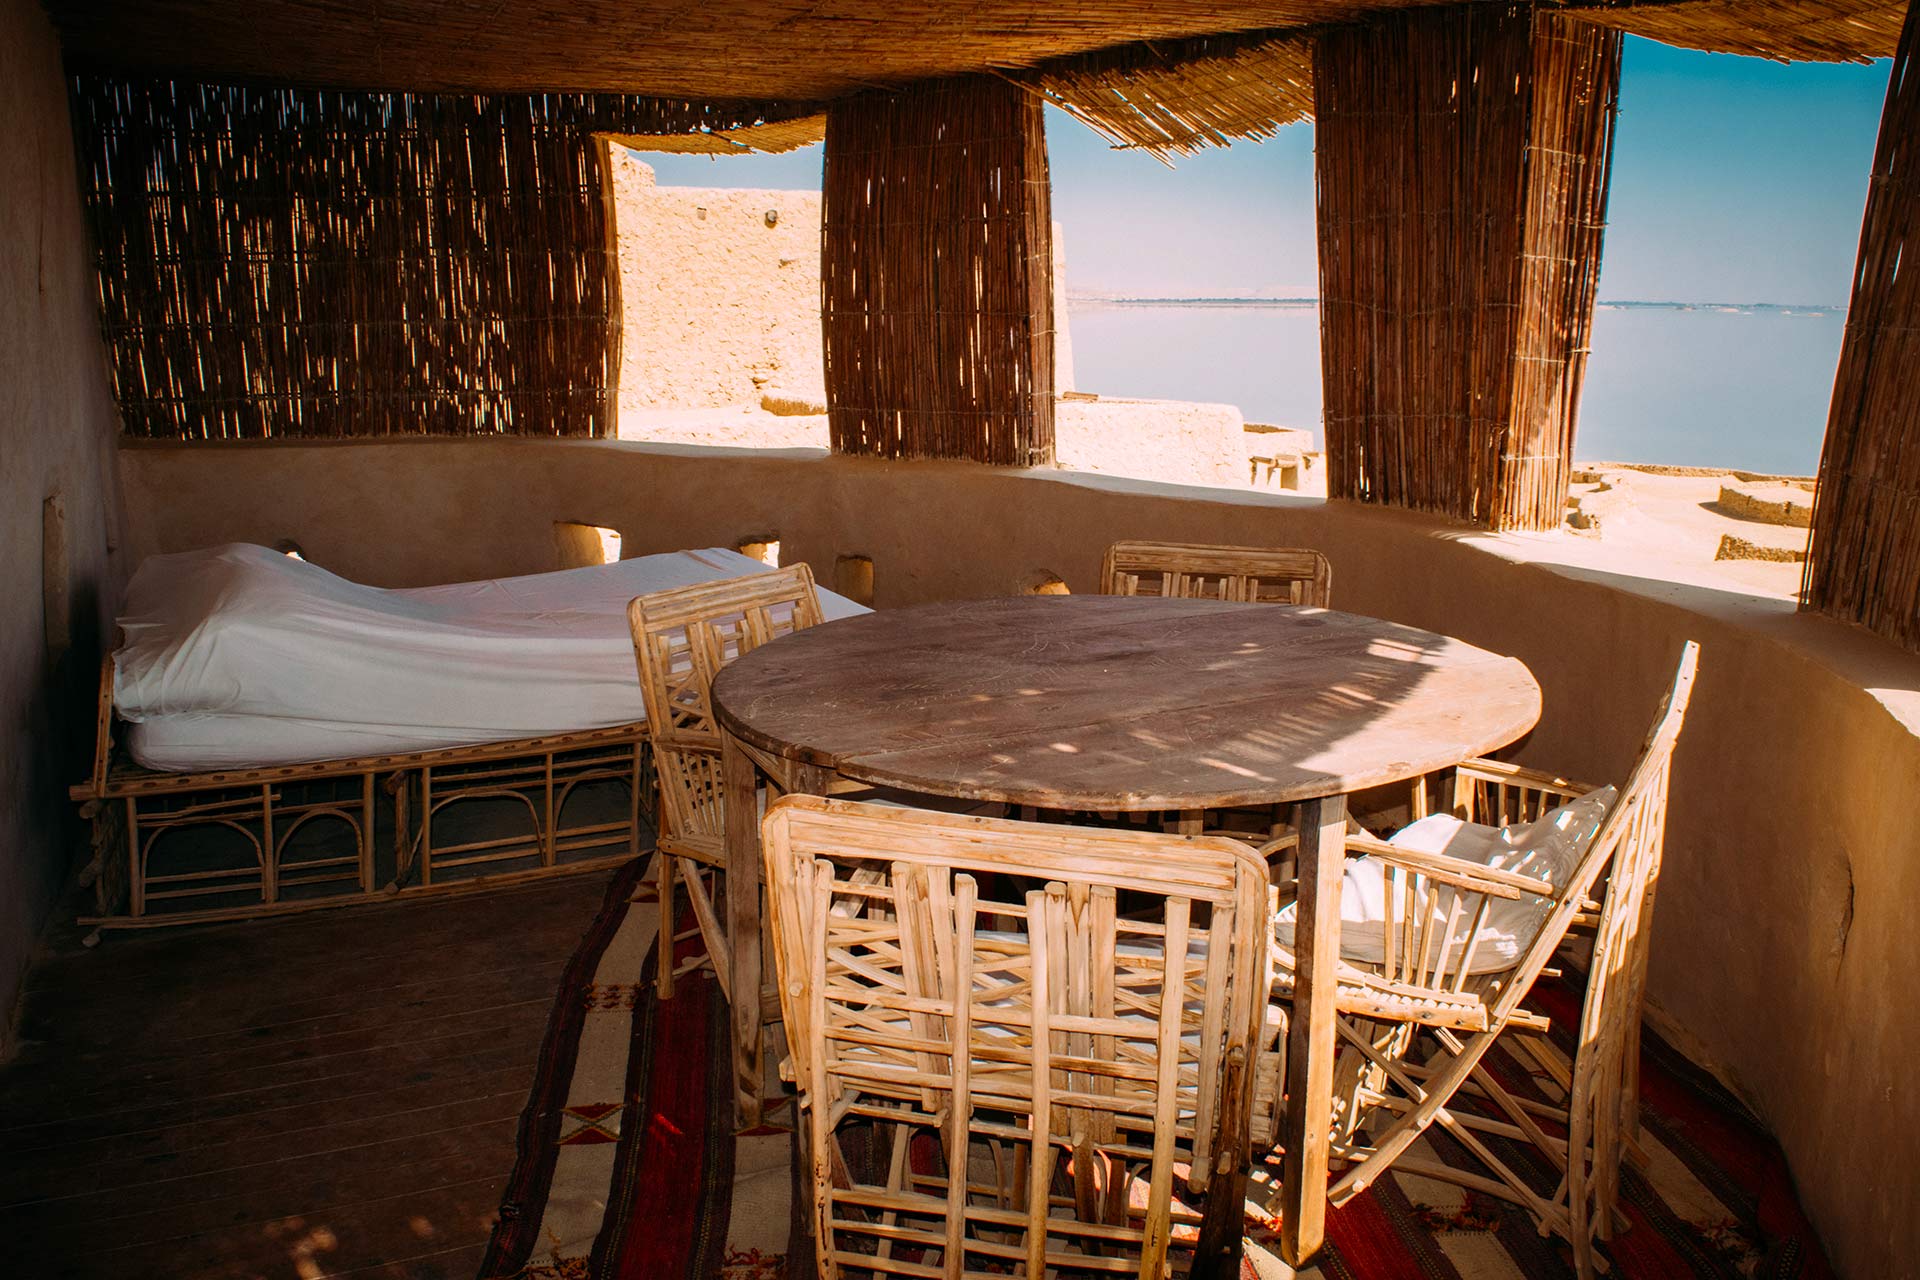 Chambre avec vue sur le lac, Adrere Amellal, Siwa, Égypte © Abdalla Hassan / Adrere Amellal